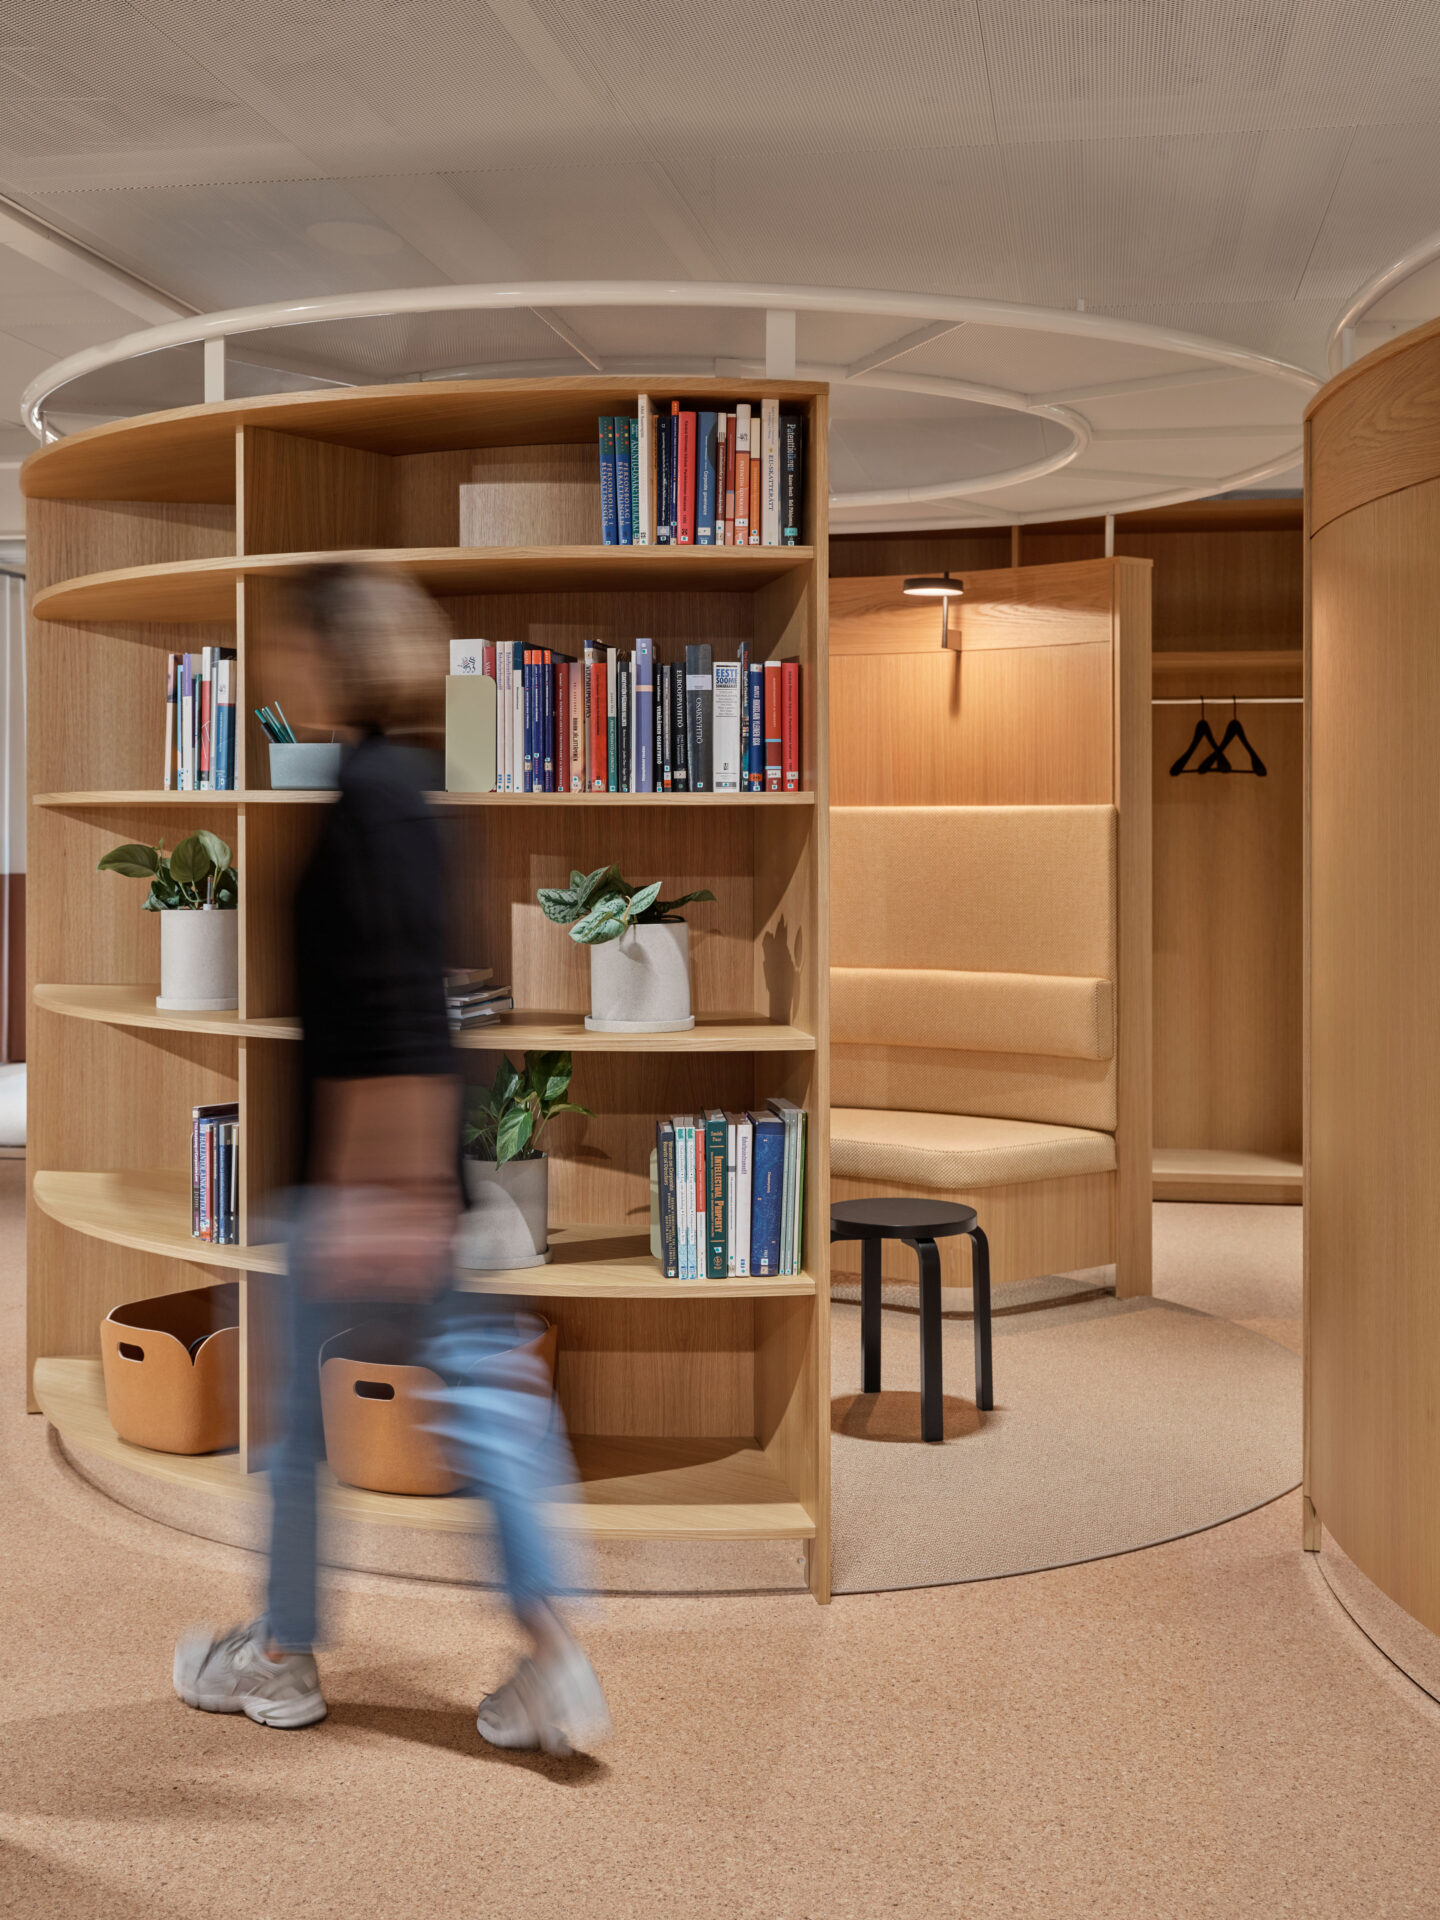 rounded shelve, custom made furniture, wooden, light carpet, modern office design